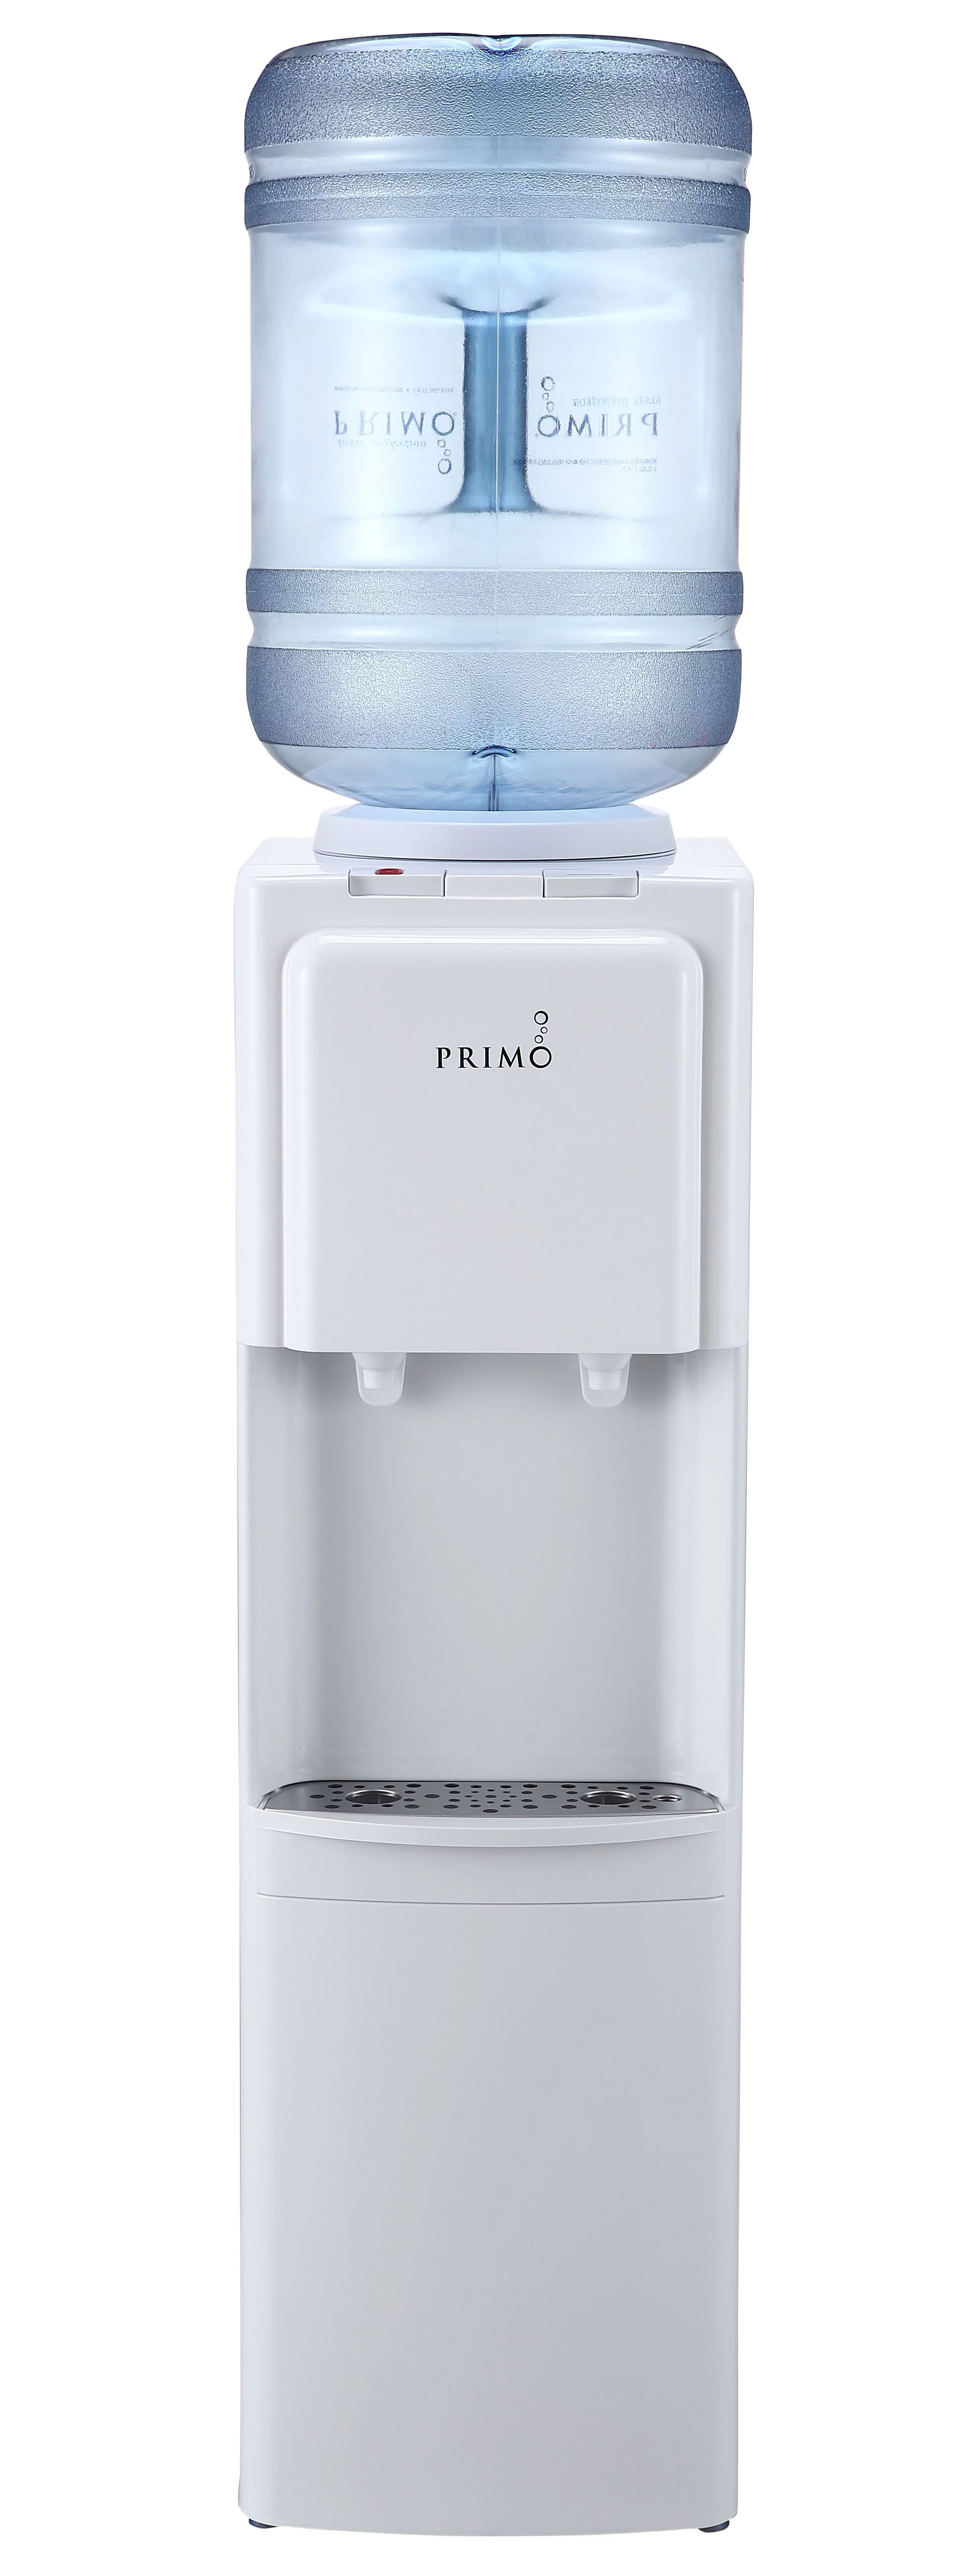 Primo Water Dispenser Top Loading, Hot, Cold Temperature, White - Walmart.com | Walmart (US)